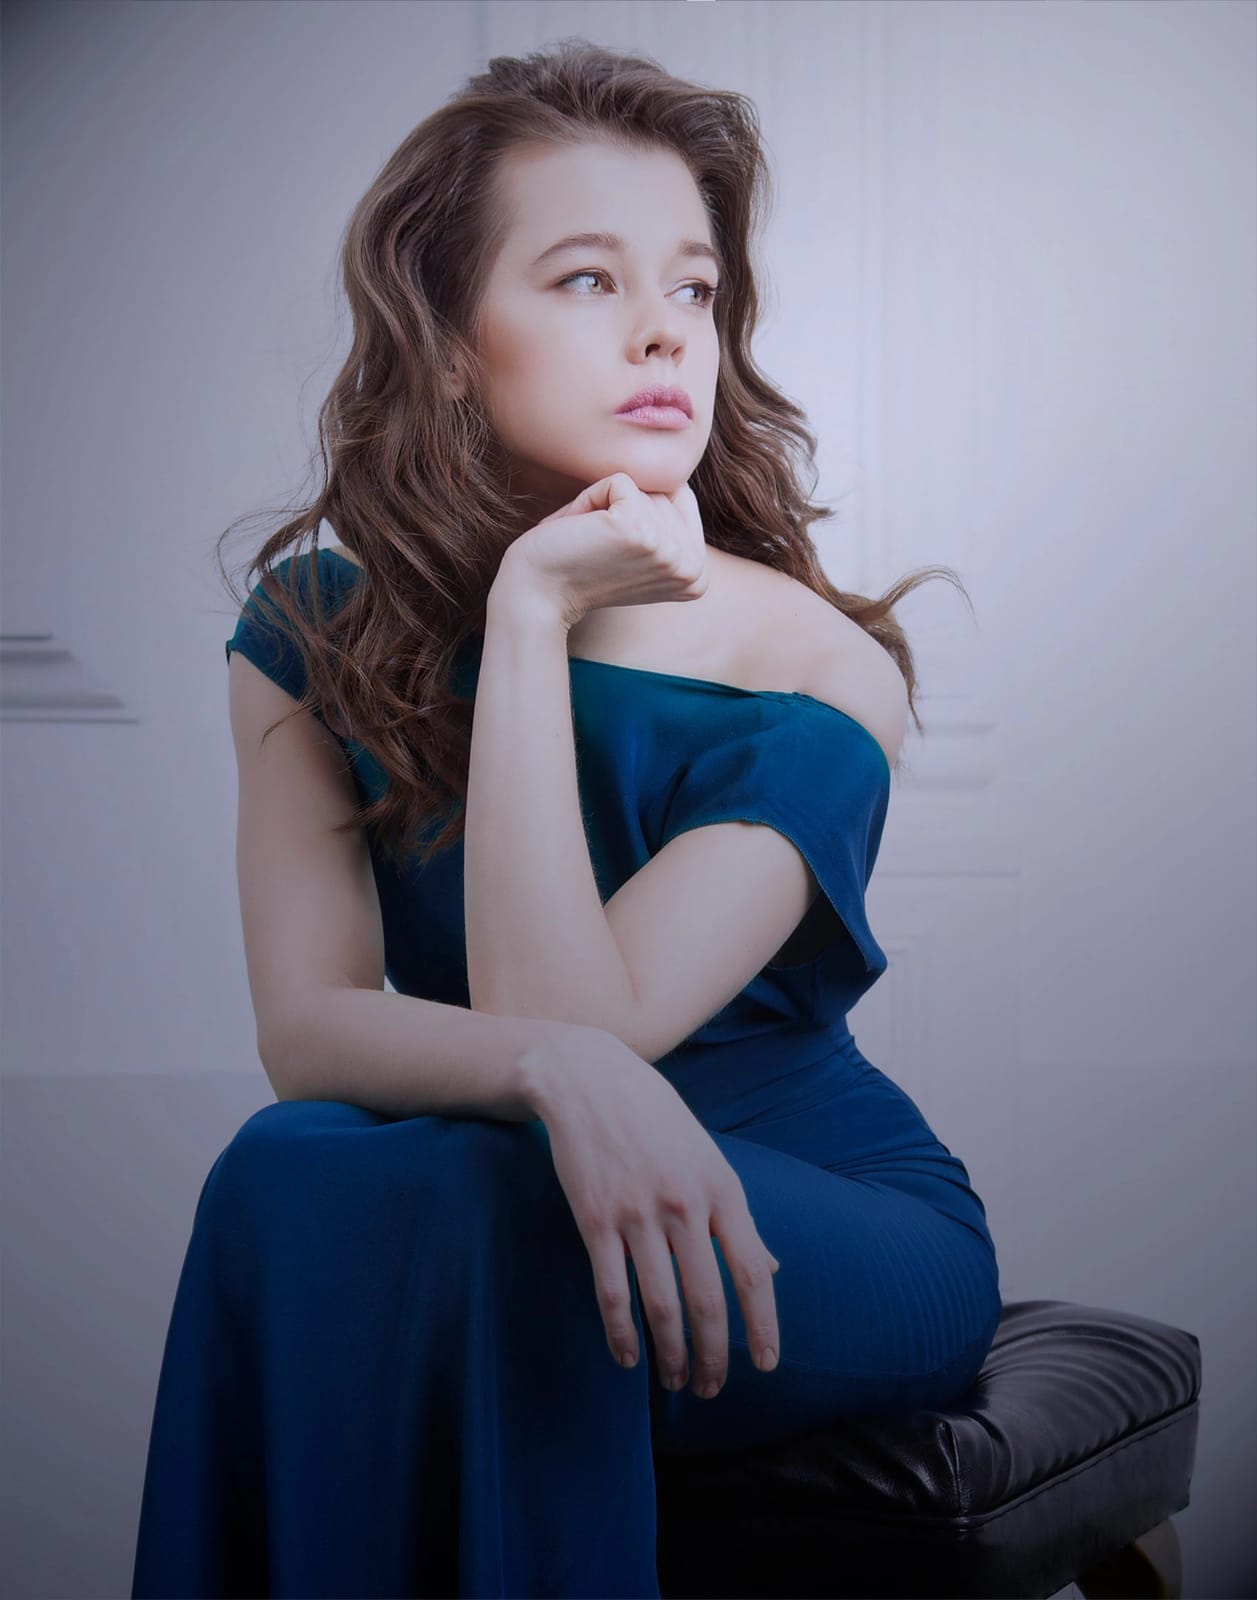 Актриса Катерина Шпица: «Я кучу ролей не могу сыграть из-за того, что молодо выгляжу»